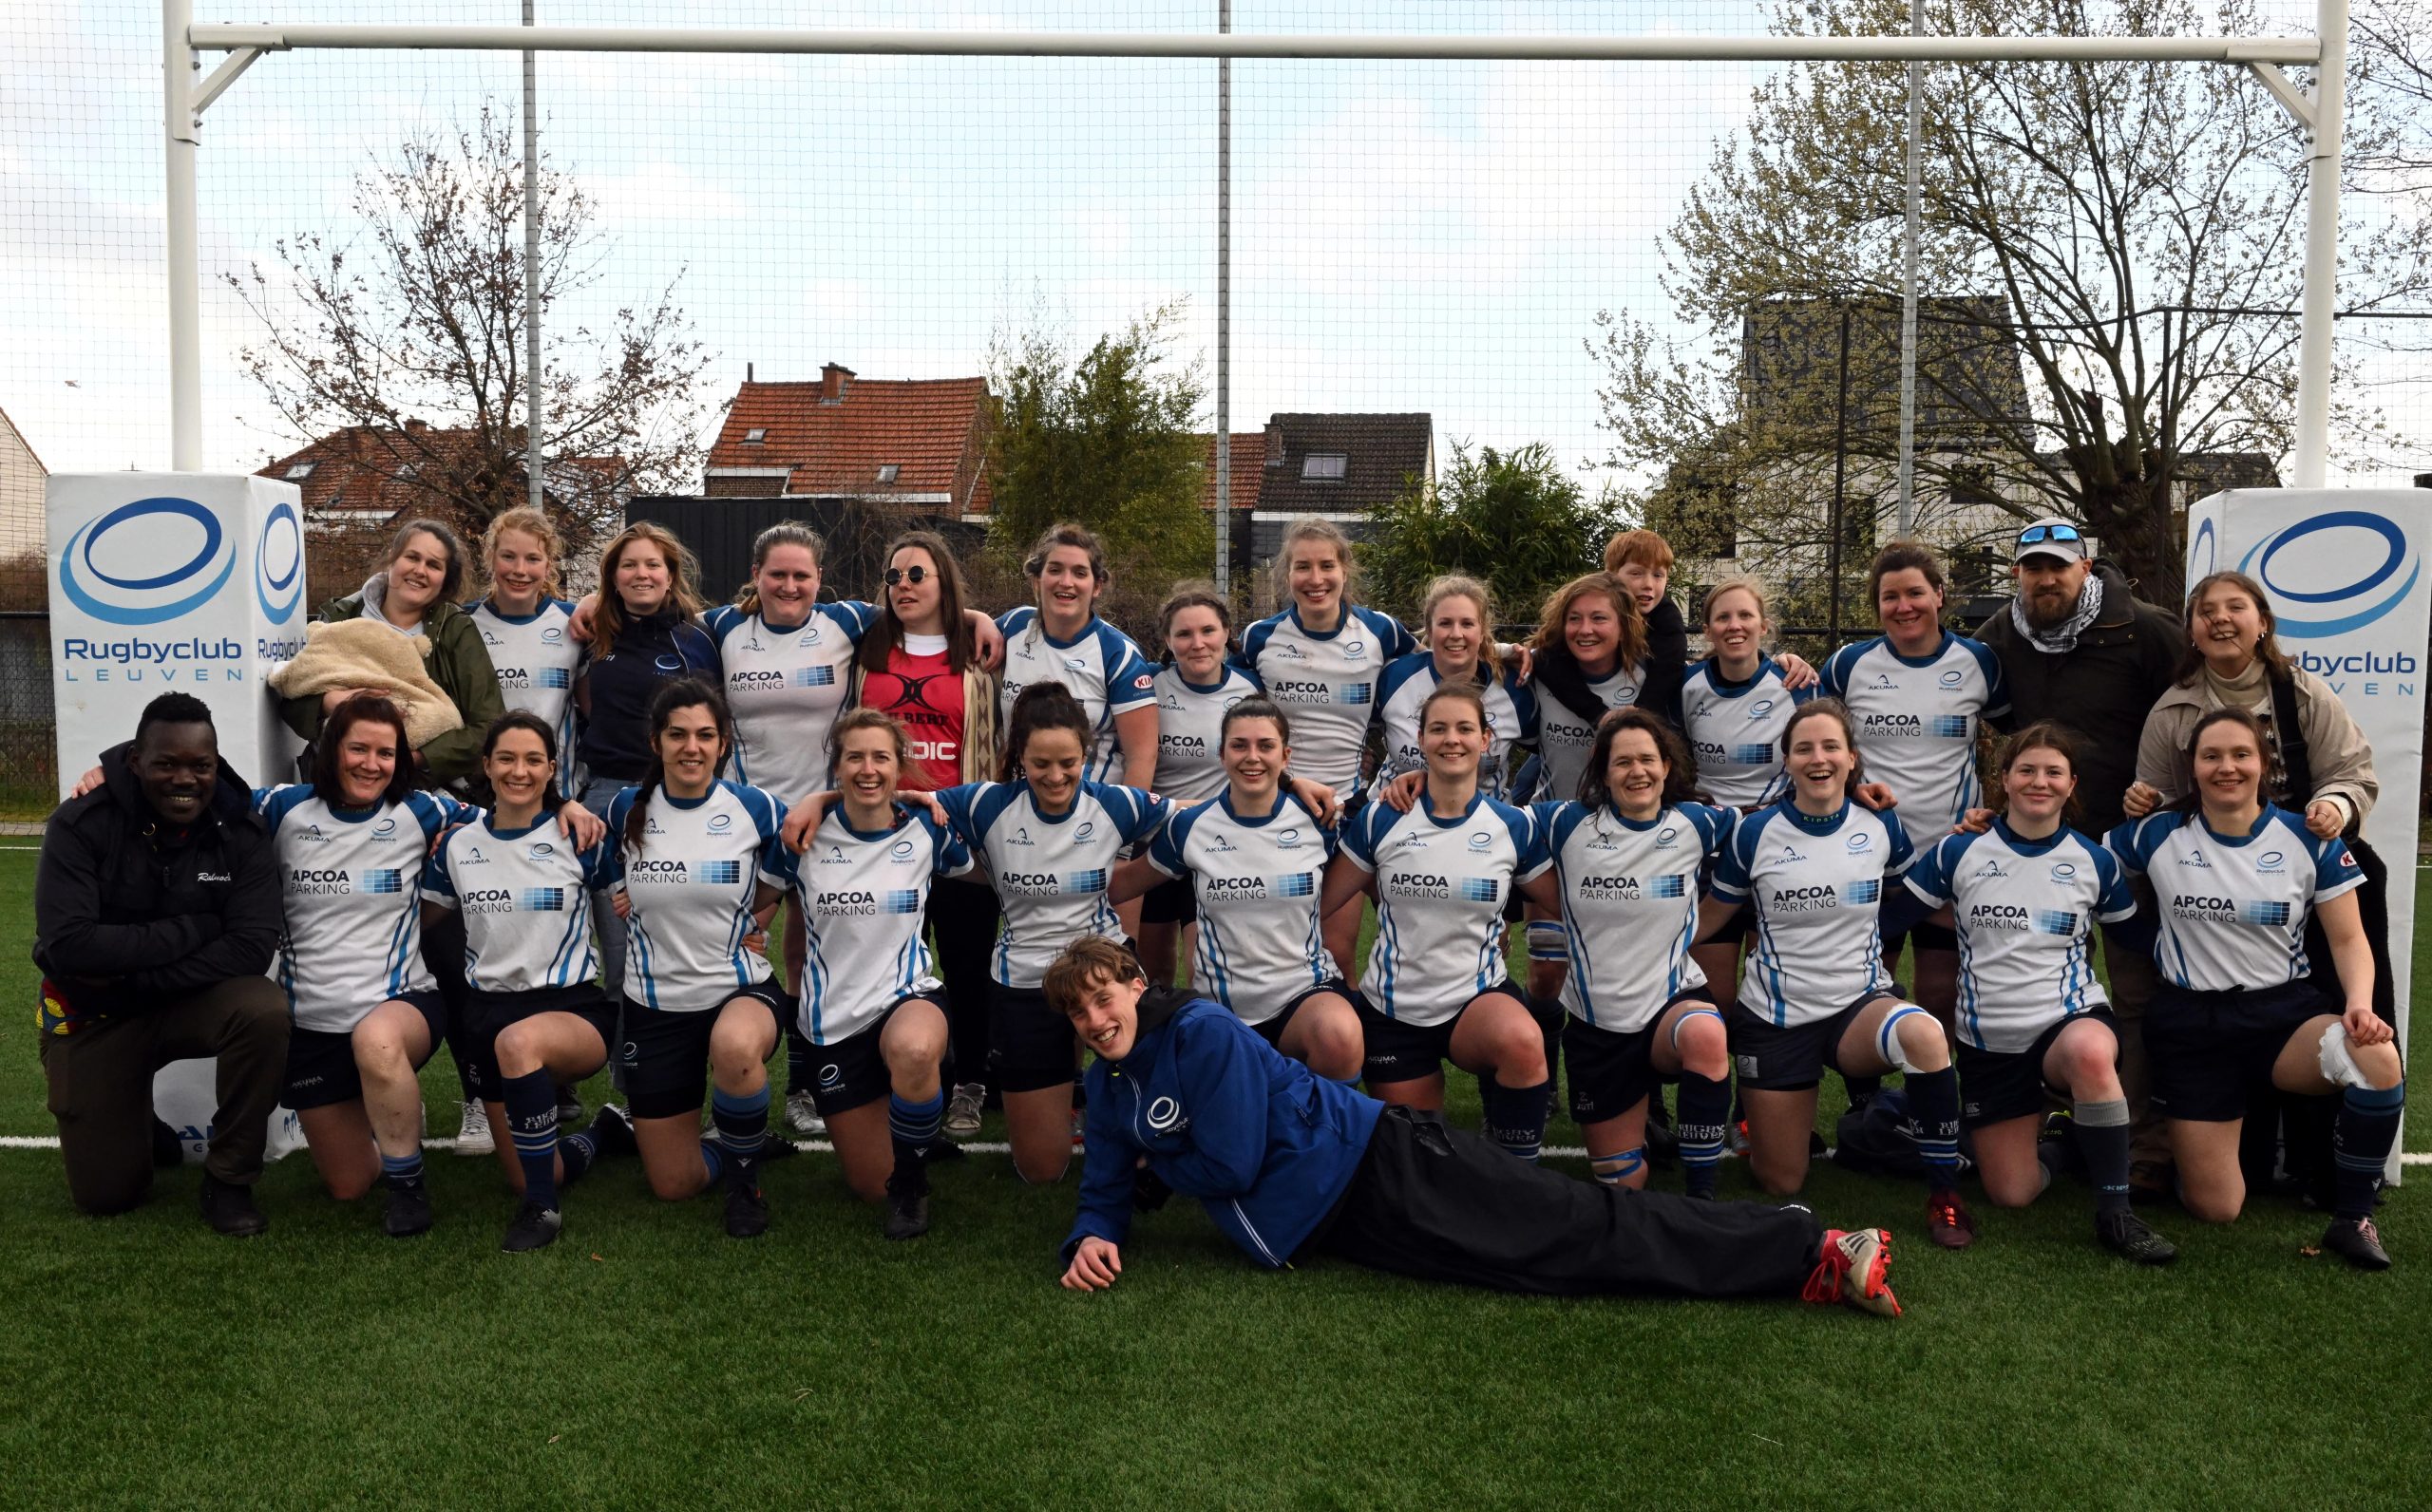 De meiden van Rugby Club Leuven iets formeler in beeld